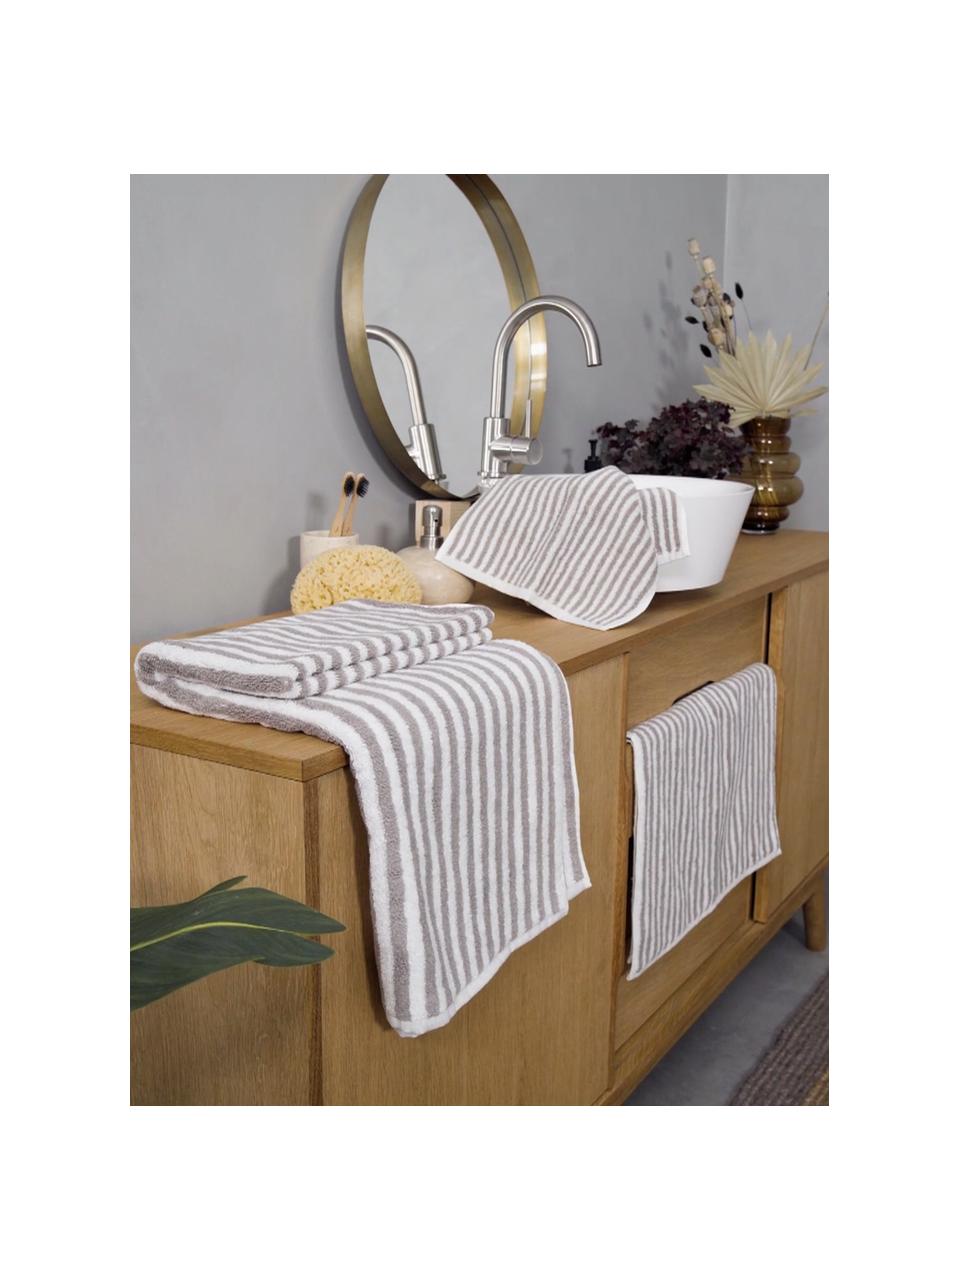 Pruhované ručníky Viola, 2 ks, 100% bavlna, střední gramáž 550 g/m², Šedá, bílá, Ručník pro hosty, Š 30, D 50 cm, 2 ks